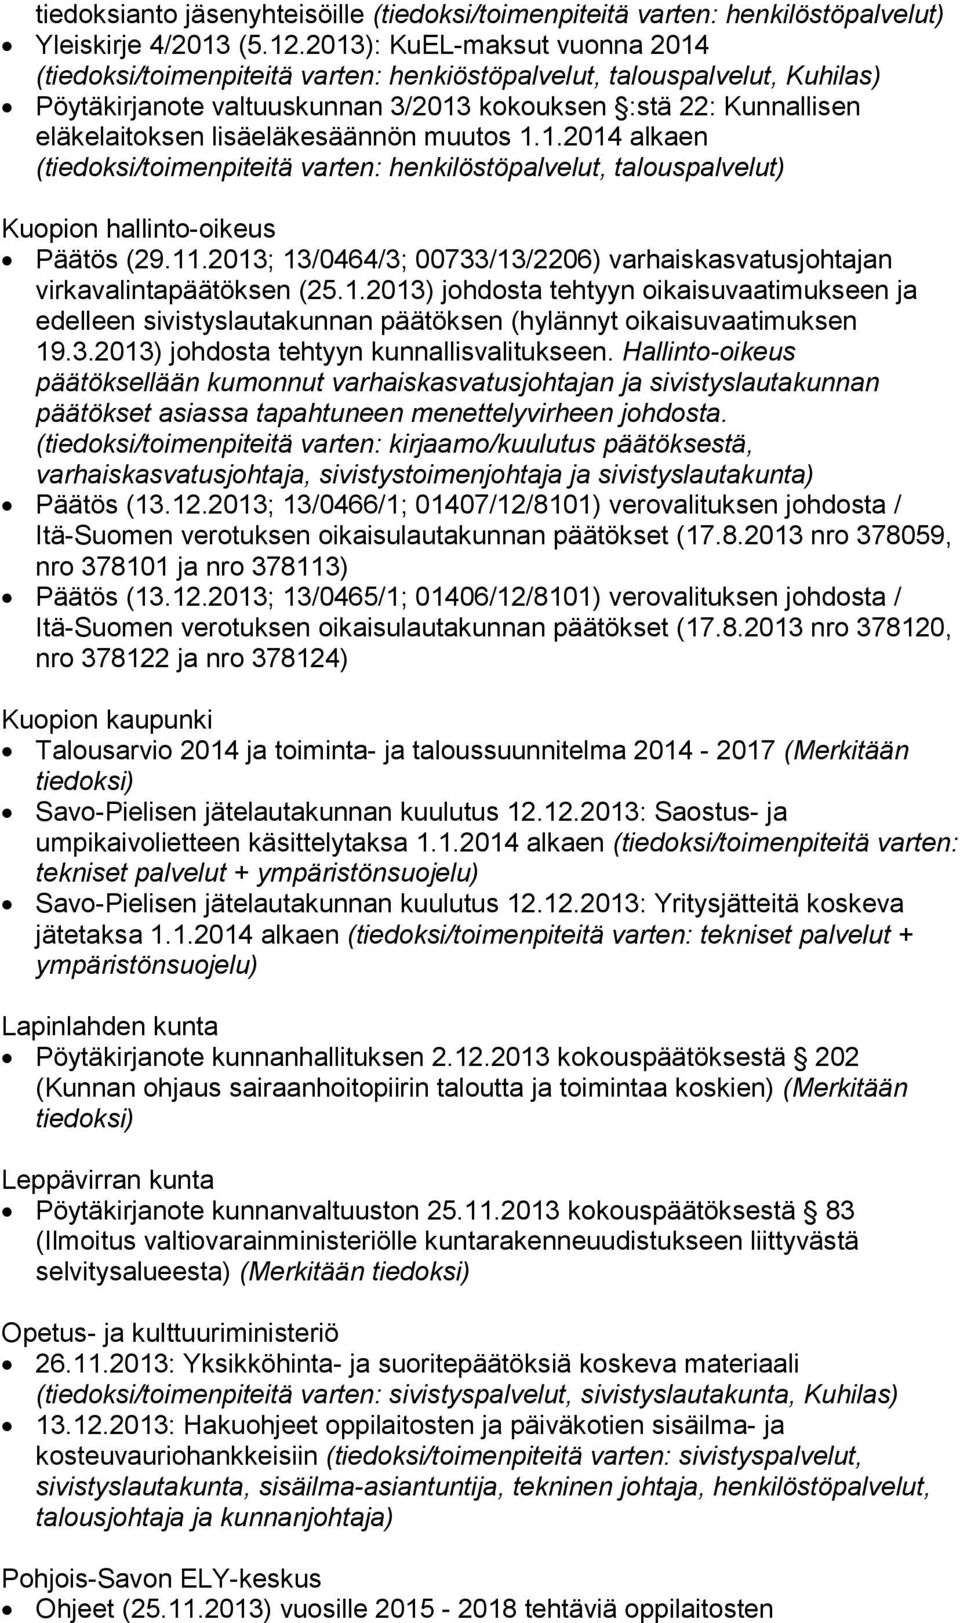 lisäeläkesäännön muutos 1.1.2014 alkaen (tiedoksi/toimenpiteitä varten: henkilöstöpalvelut, talouspalvelut) Kuopion hallinto-oikeus Päätös (29.11.